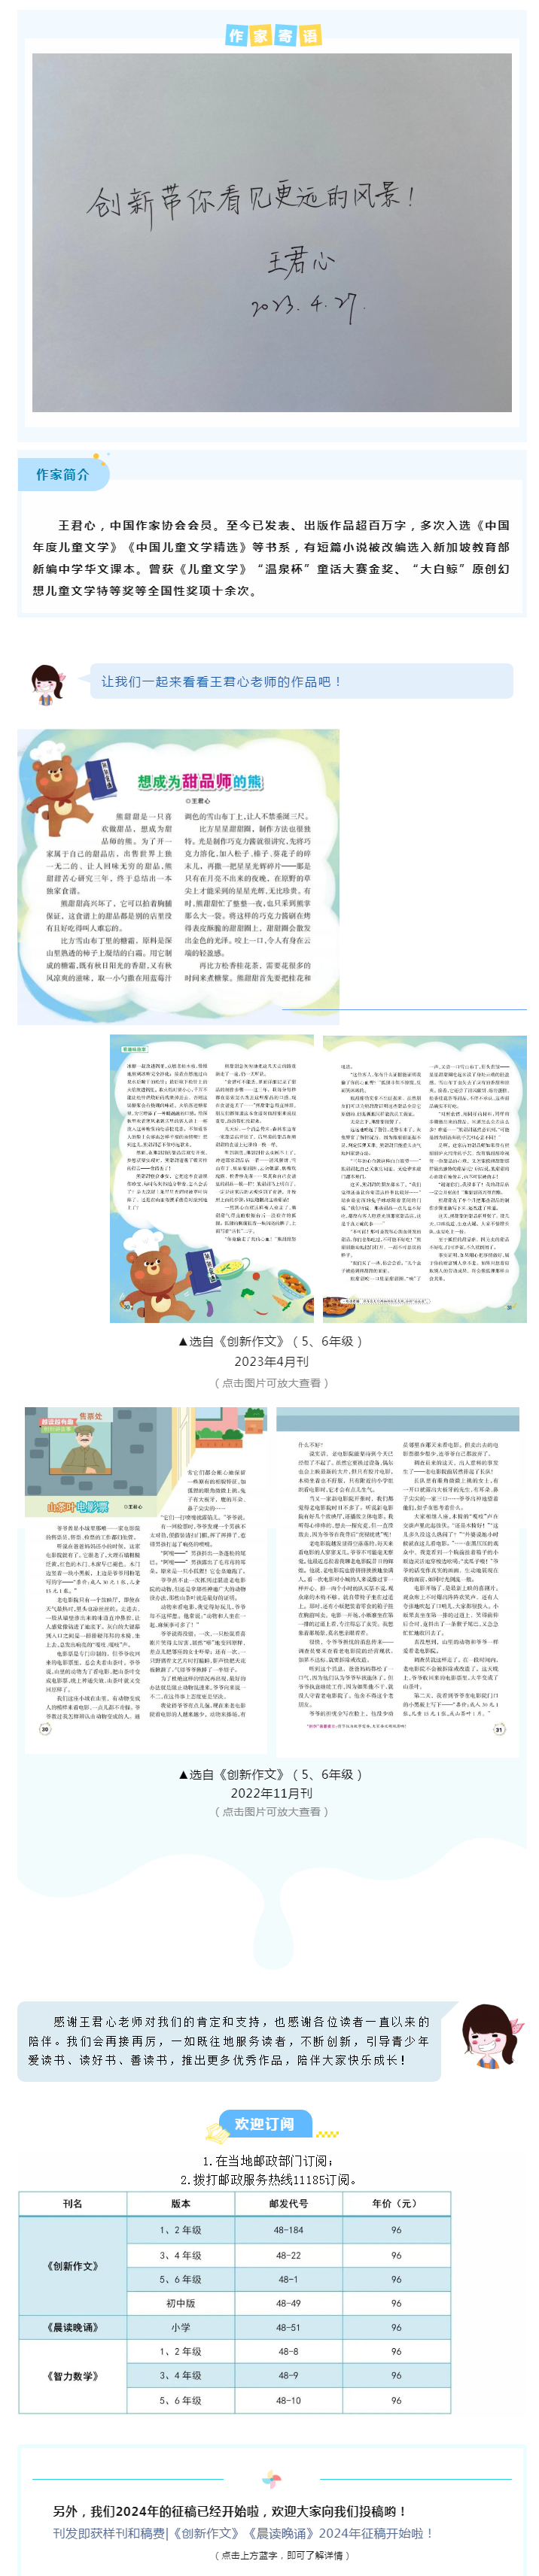 儿童文学作家王君心给《创新作文》的寄语_看图王.png